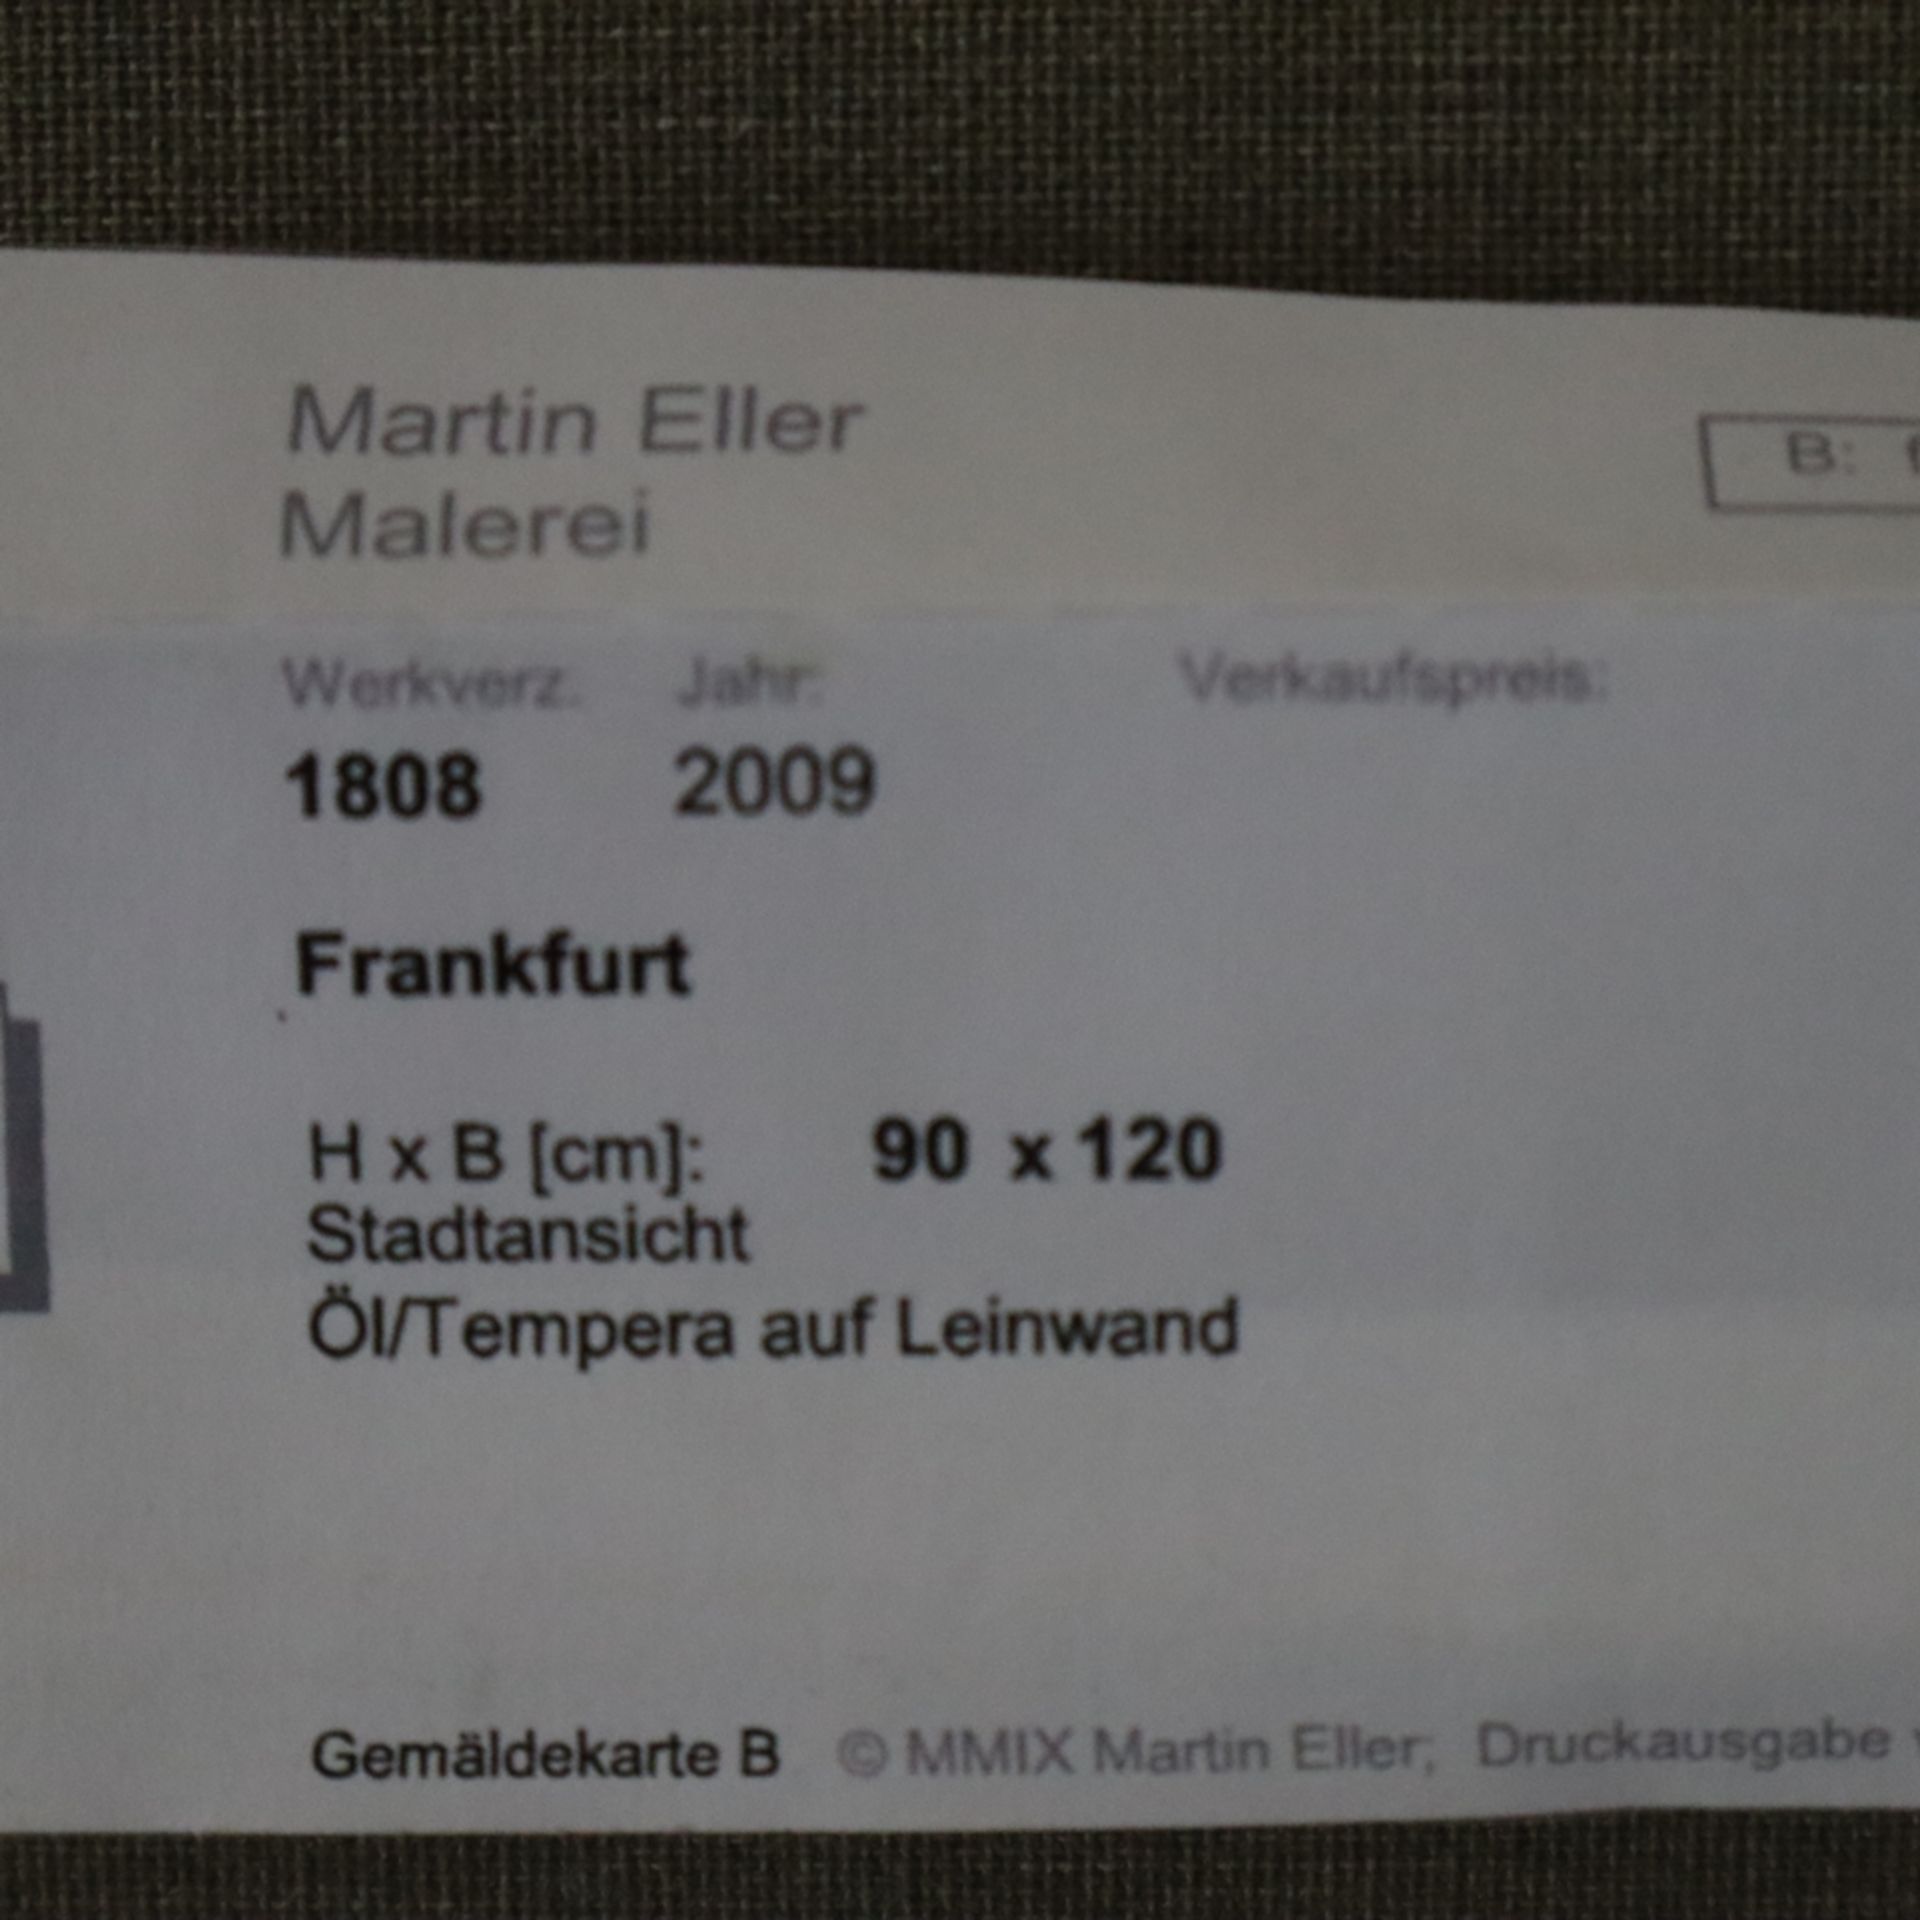 Eller, Martin (20./21.Jh.) - "Frankfurt", 2009, Öl/Tempera auf Leinwand, verso und seitlich signier - Bild 7 aus 7